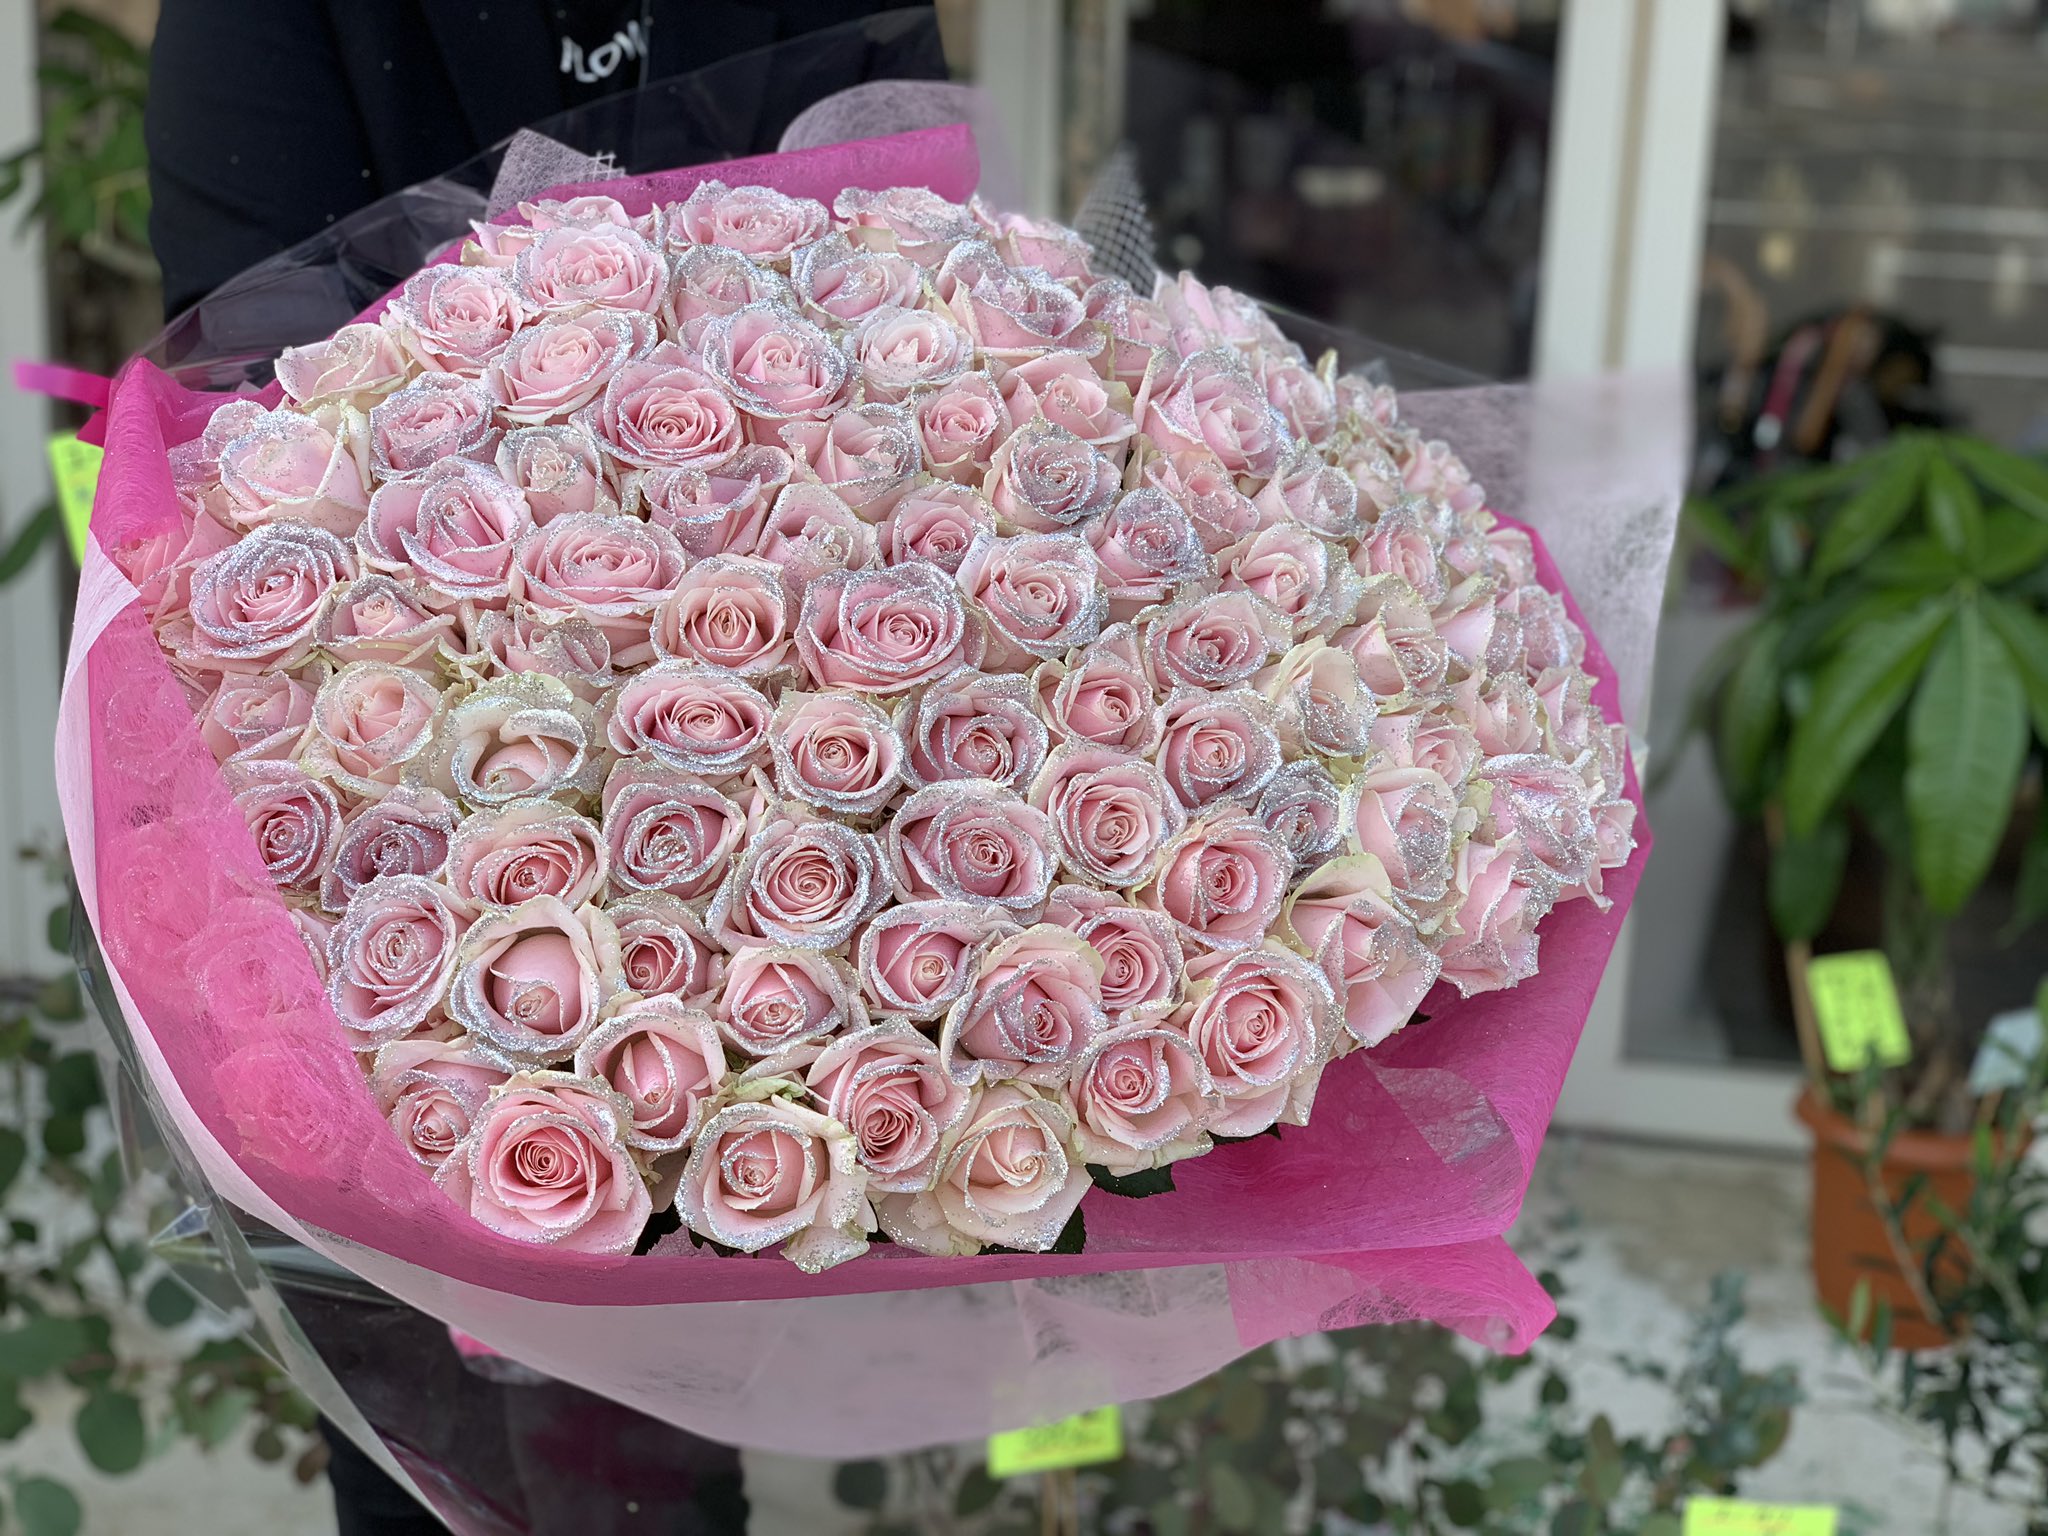 ローズショップ キラキラピンクローズ100本の花束 100 の愛 という意味がある100本の薔薇 抱え切れないほどの愛を贈ります T Co V5yzwtcwvz T Co Vaga72sgnw Twitter